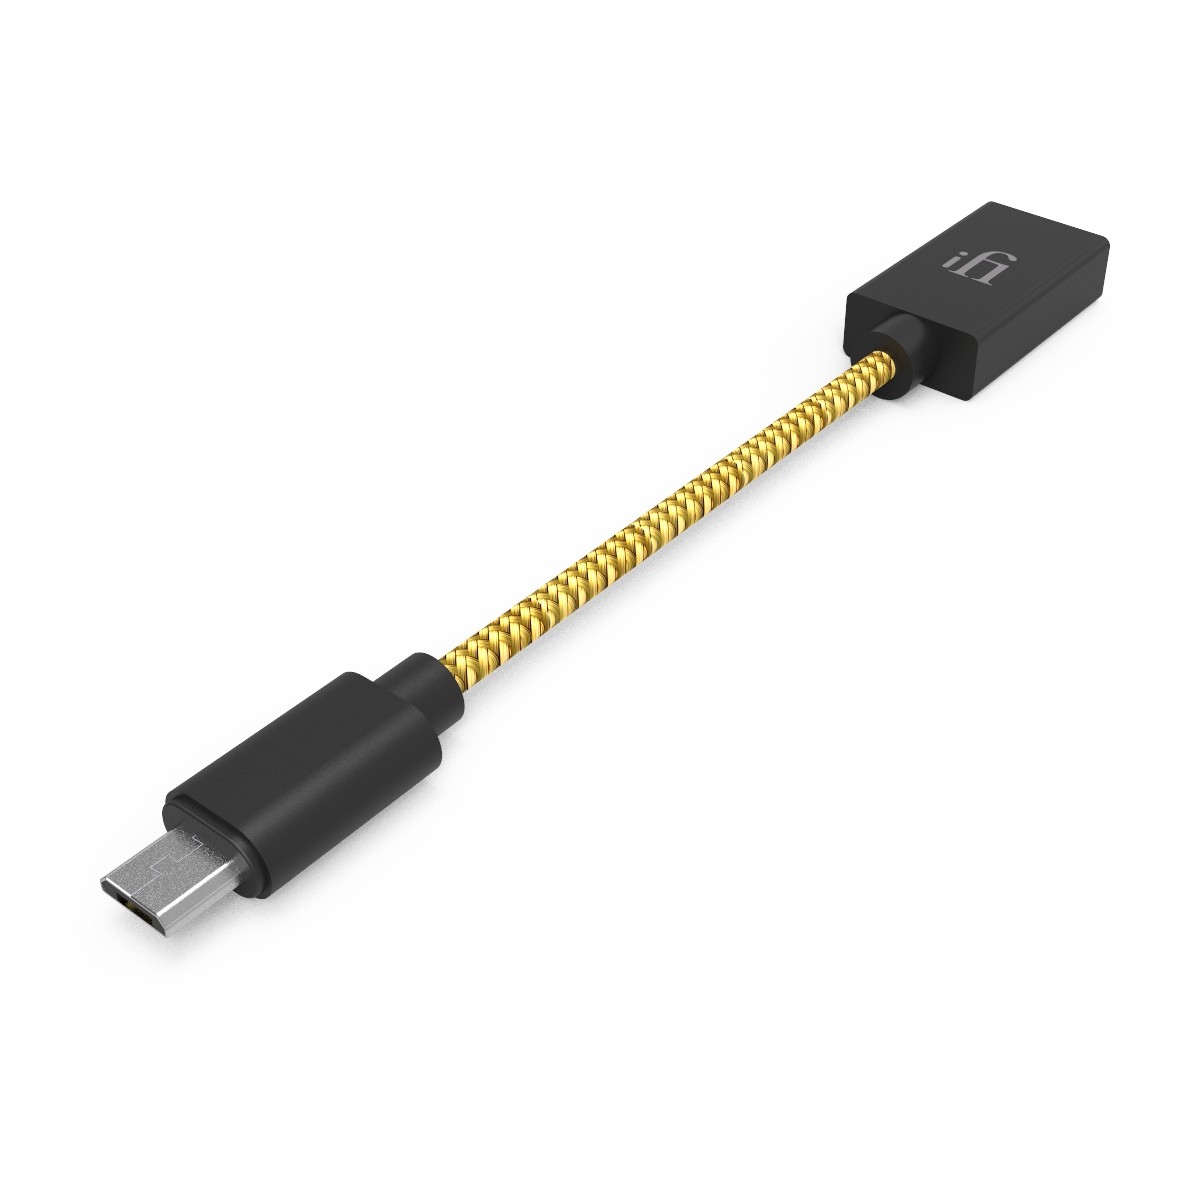 [GRADE A] IFI AUDIO Câble OTG USB-A Femelle vers Micro USB Mâle 12cm